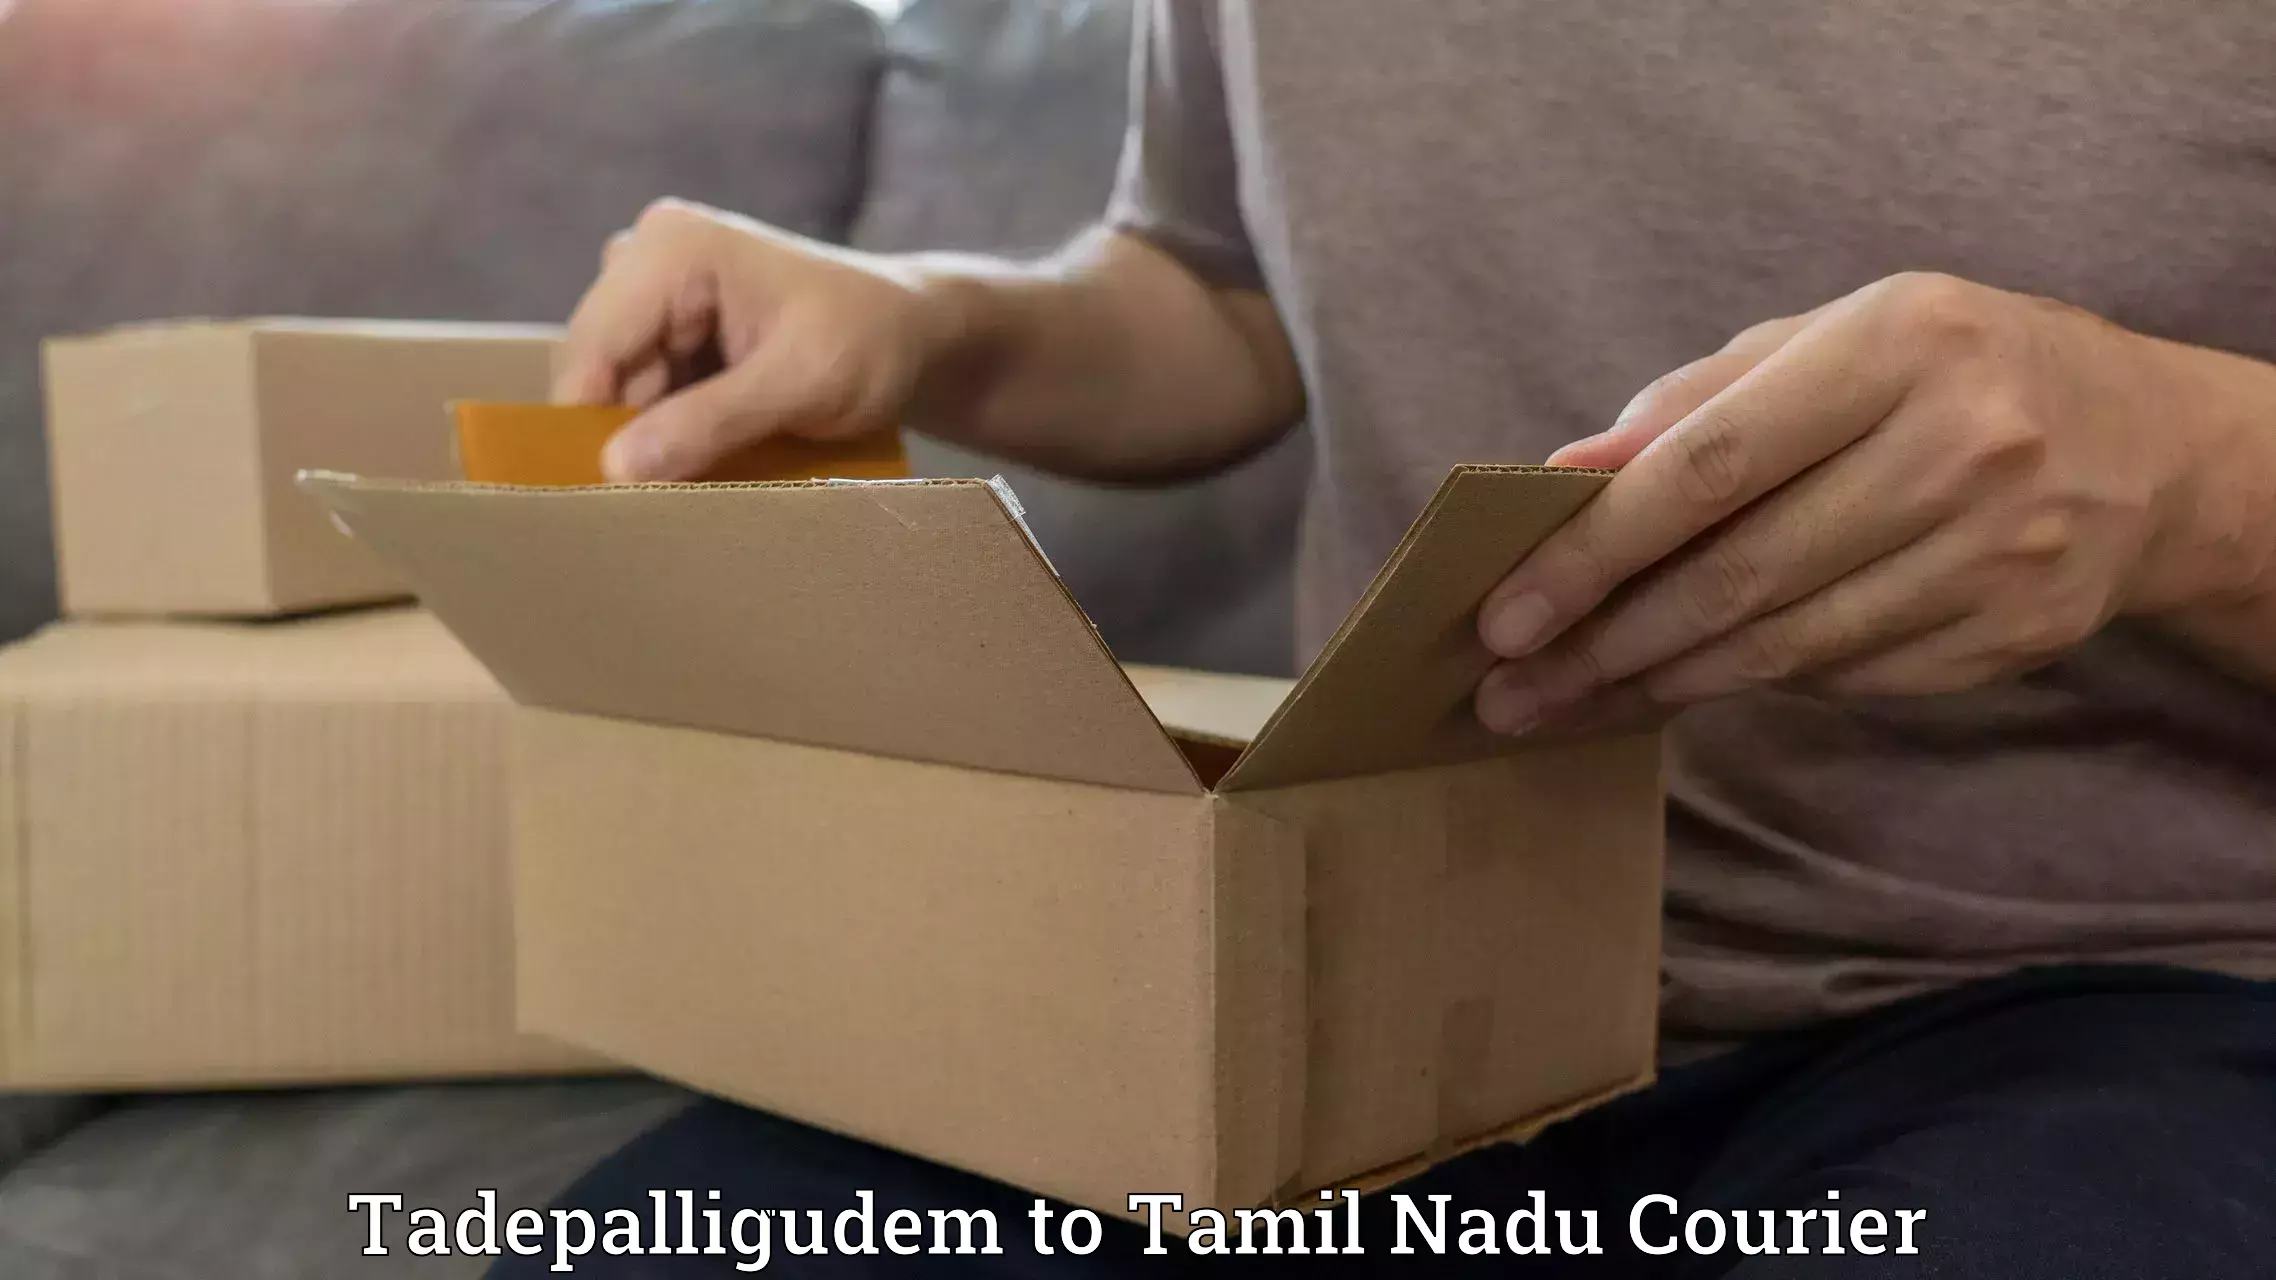 Efficient parcel service Tadepalligudem to Chennai Port